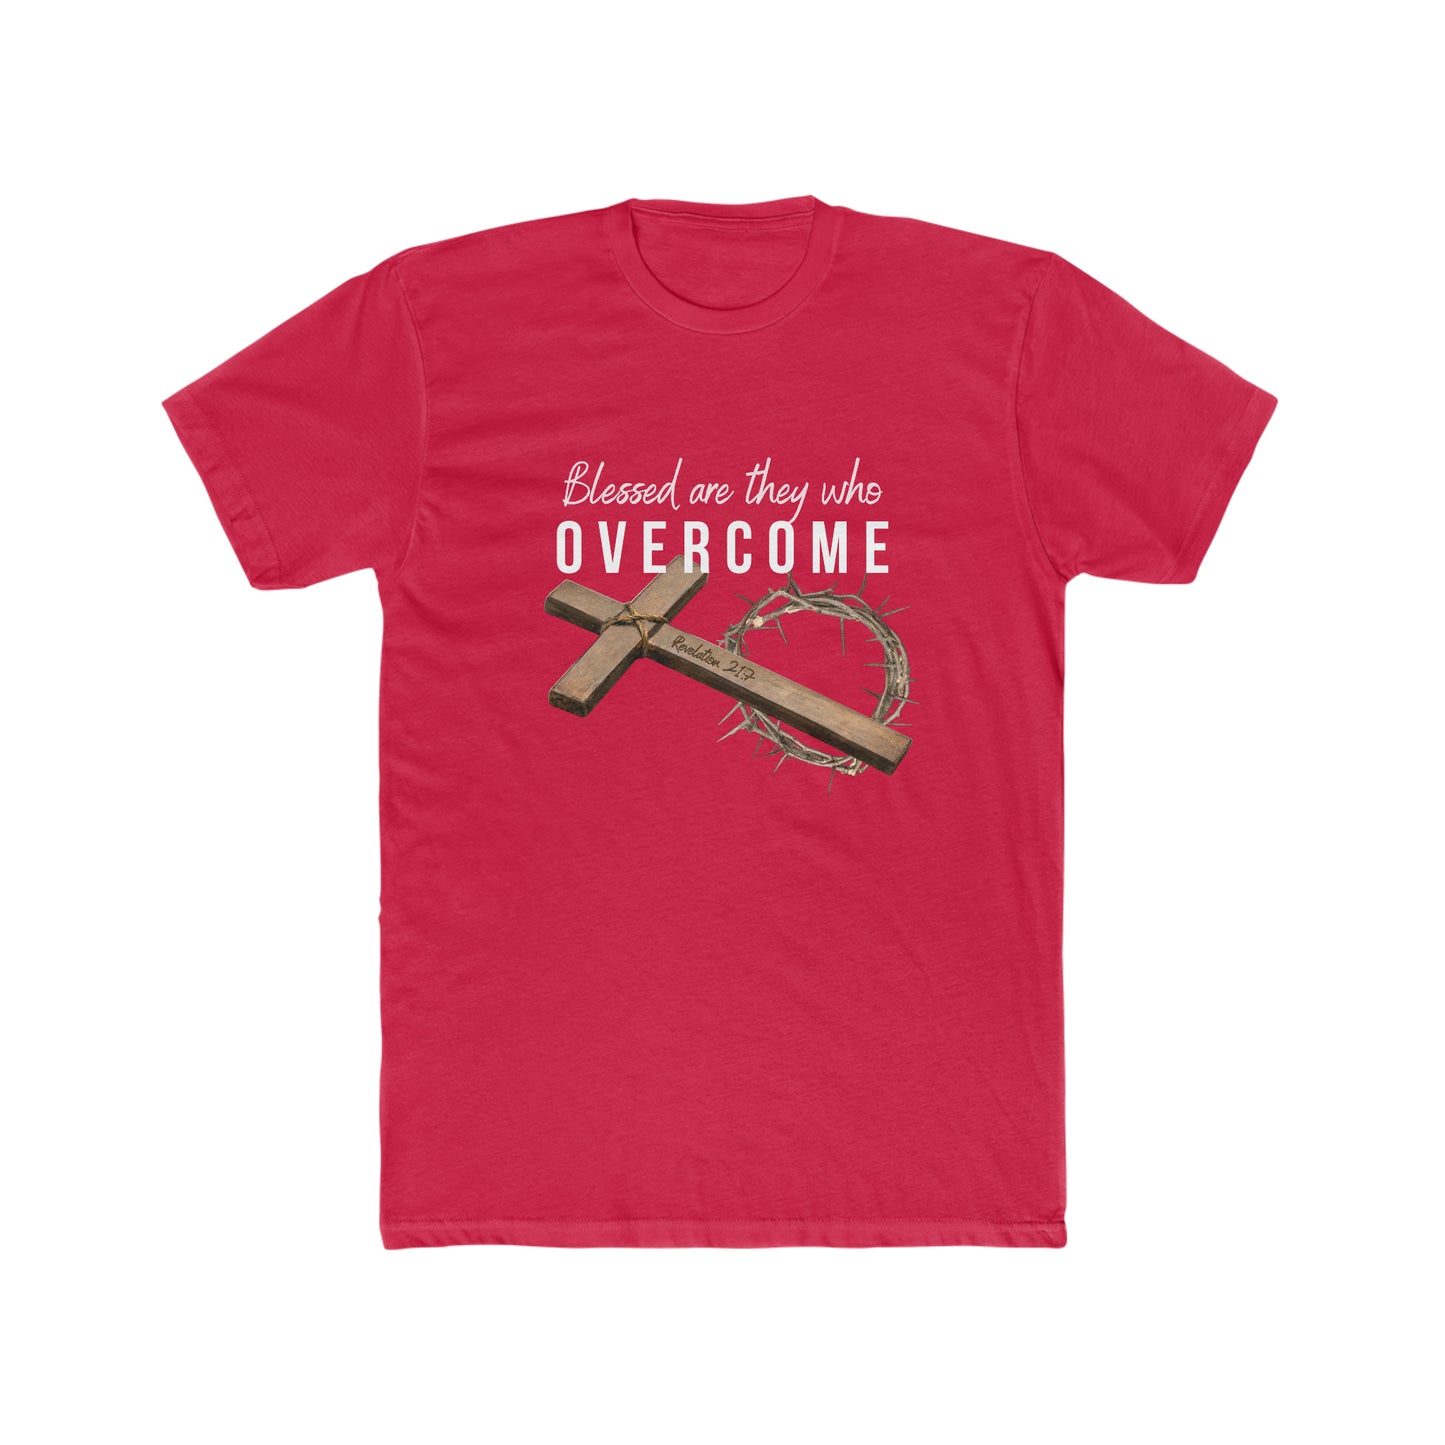 Revelation 21.7 Overcomers, Christian T-Shirt for men